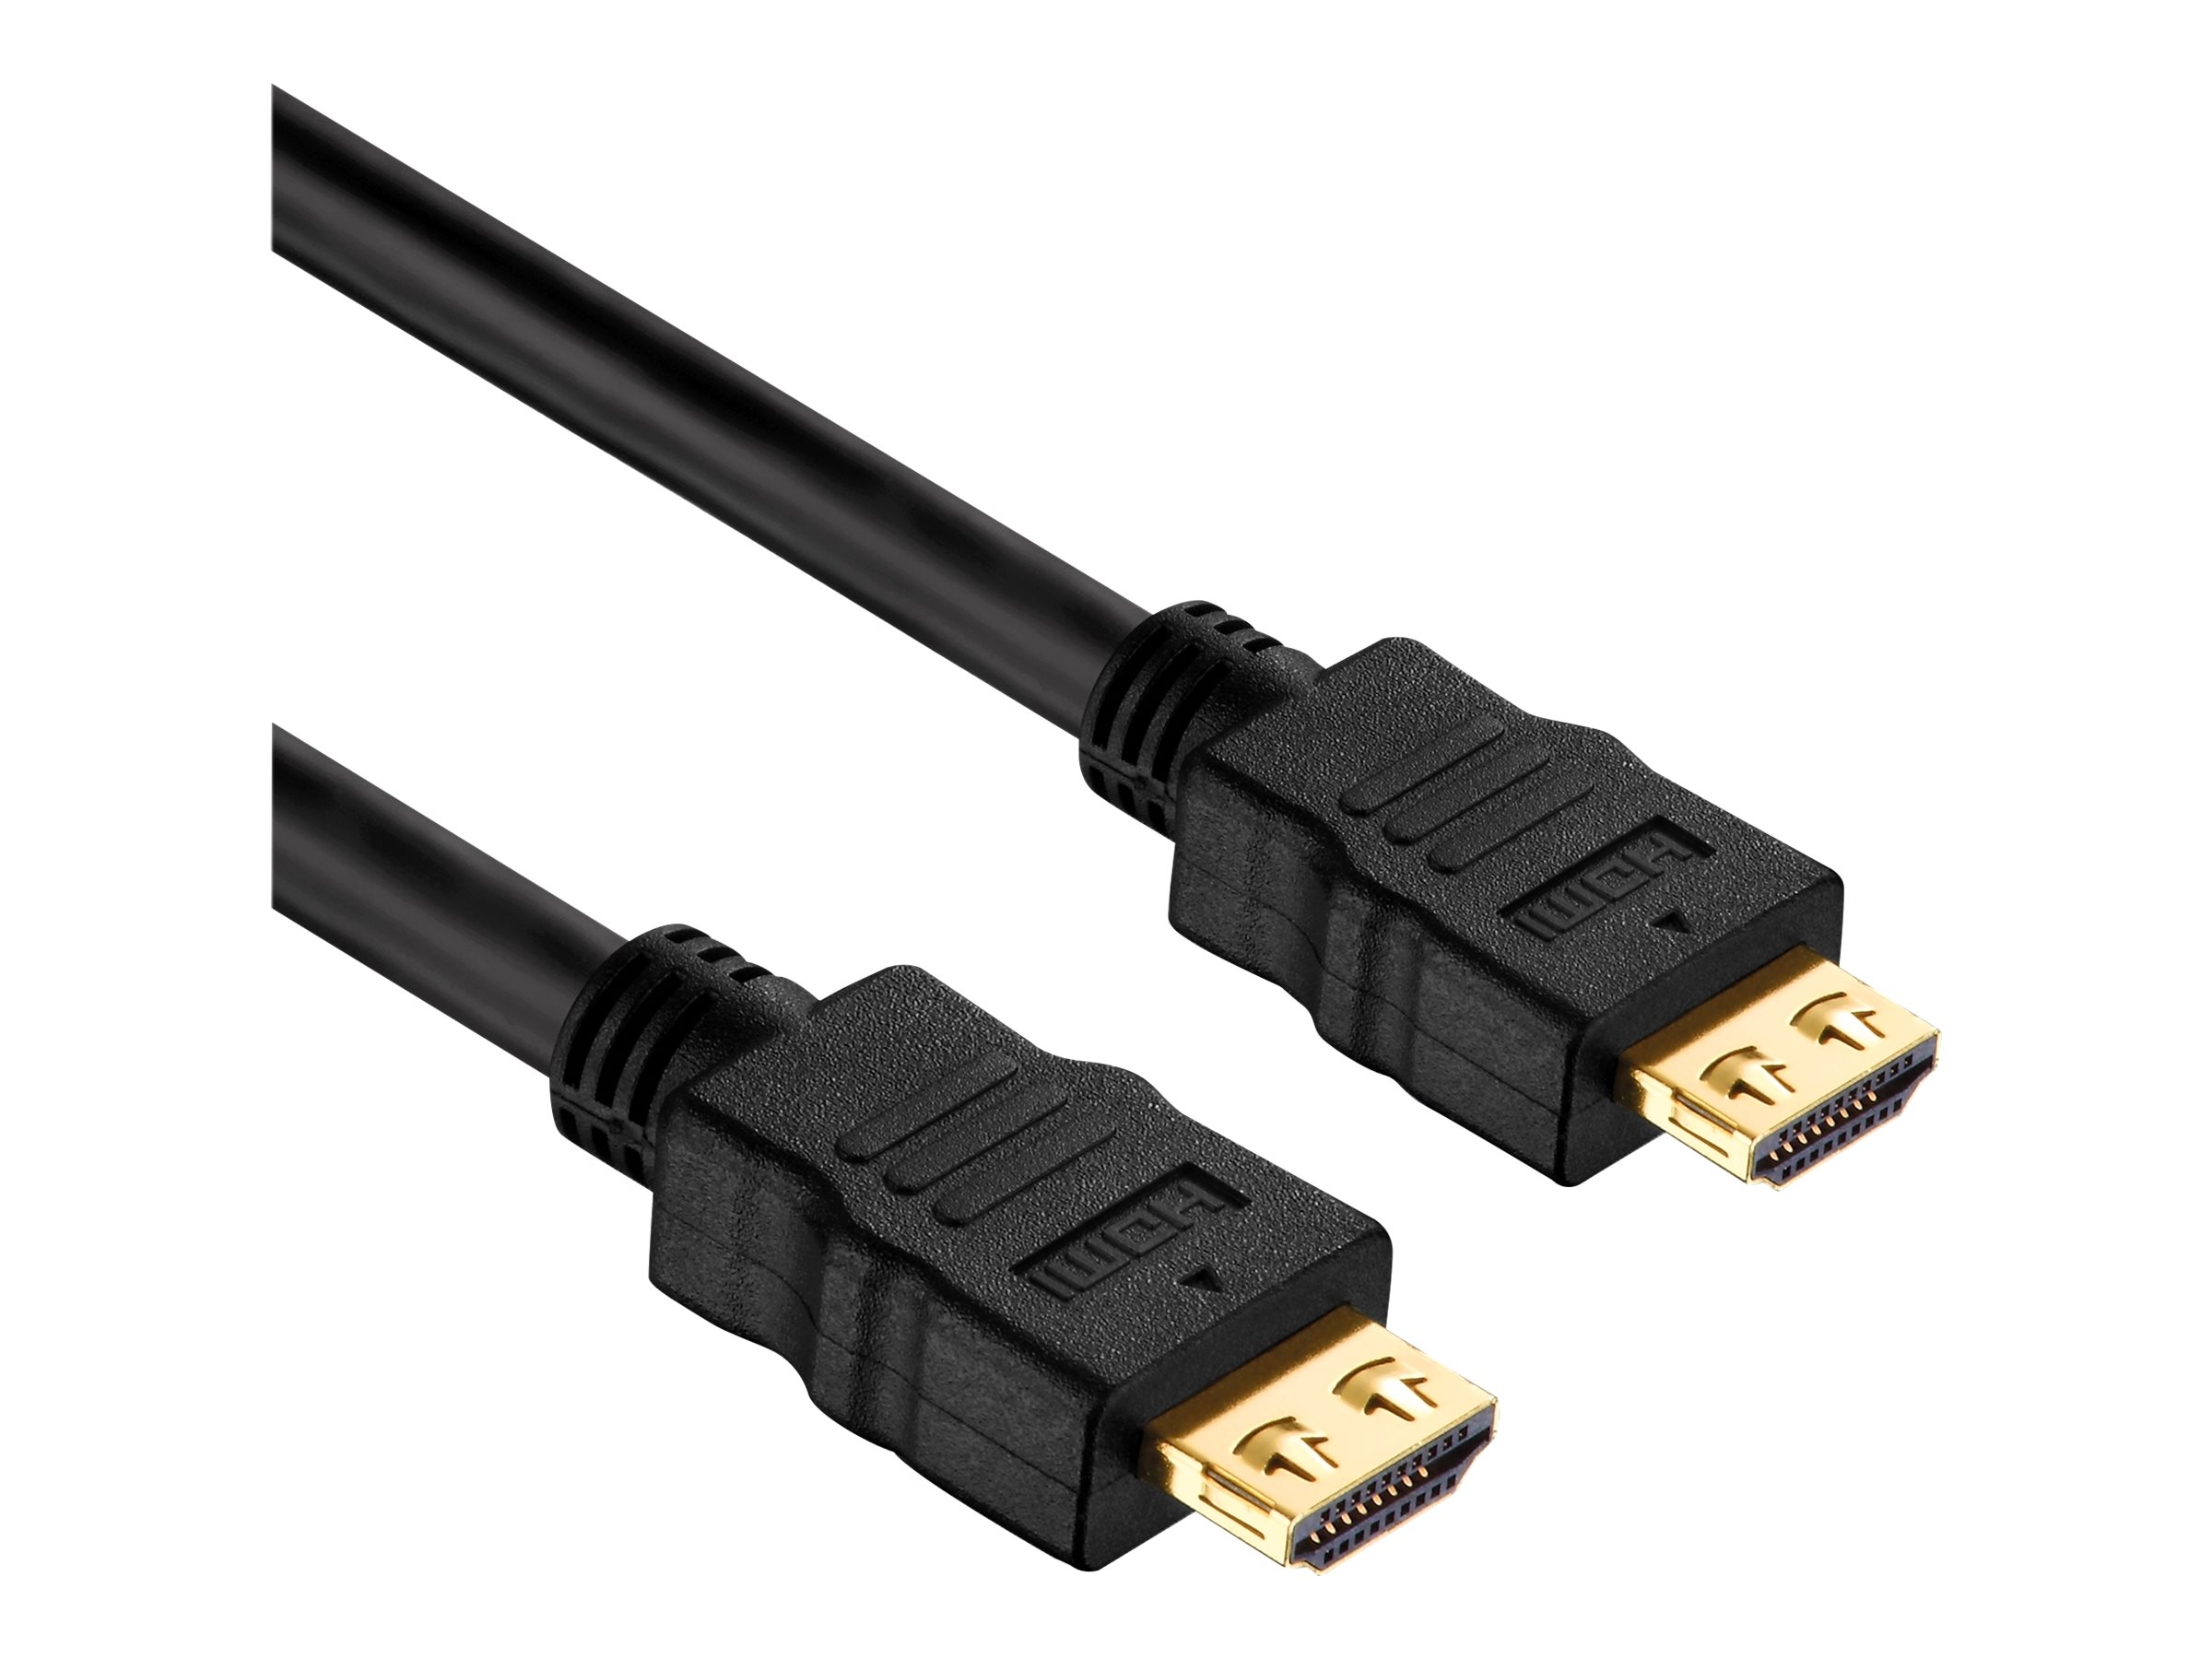 PureLink PureInstall Series - HDMI mit Ethernetkabel